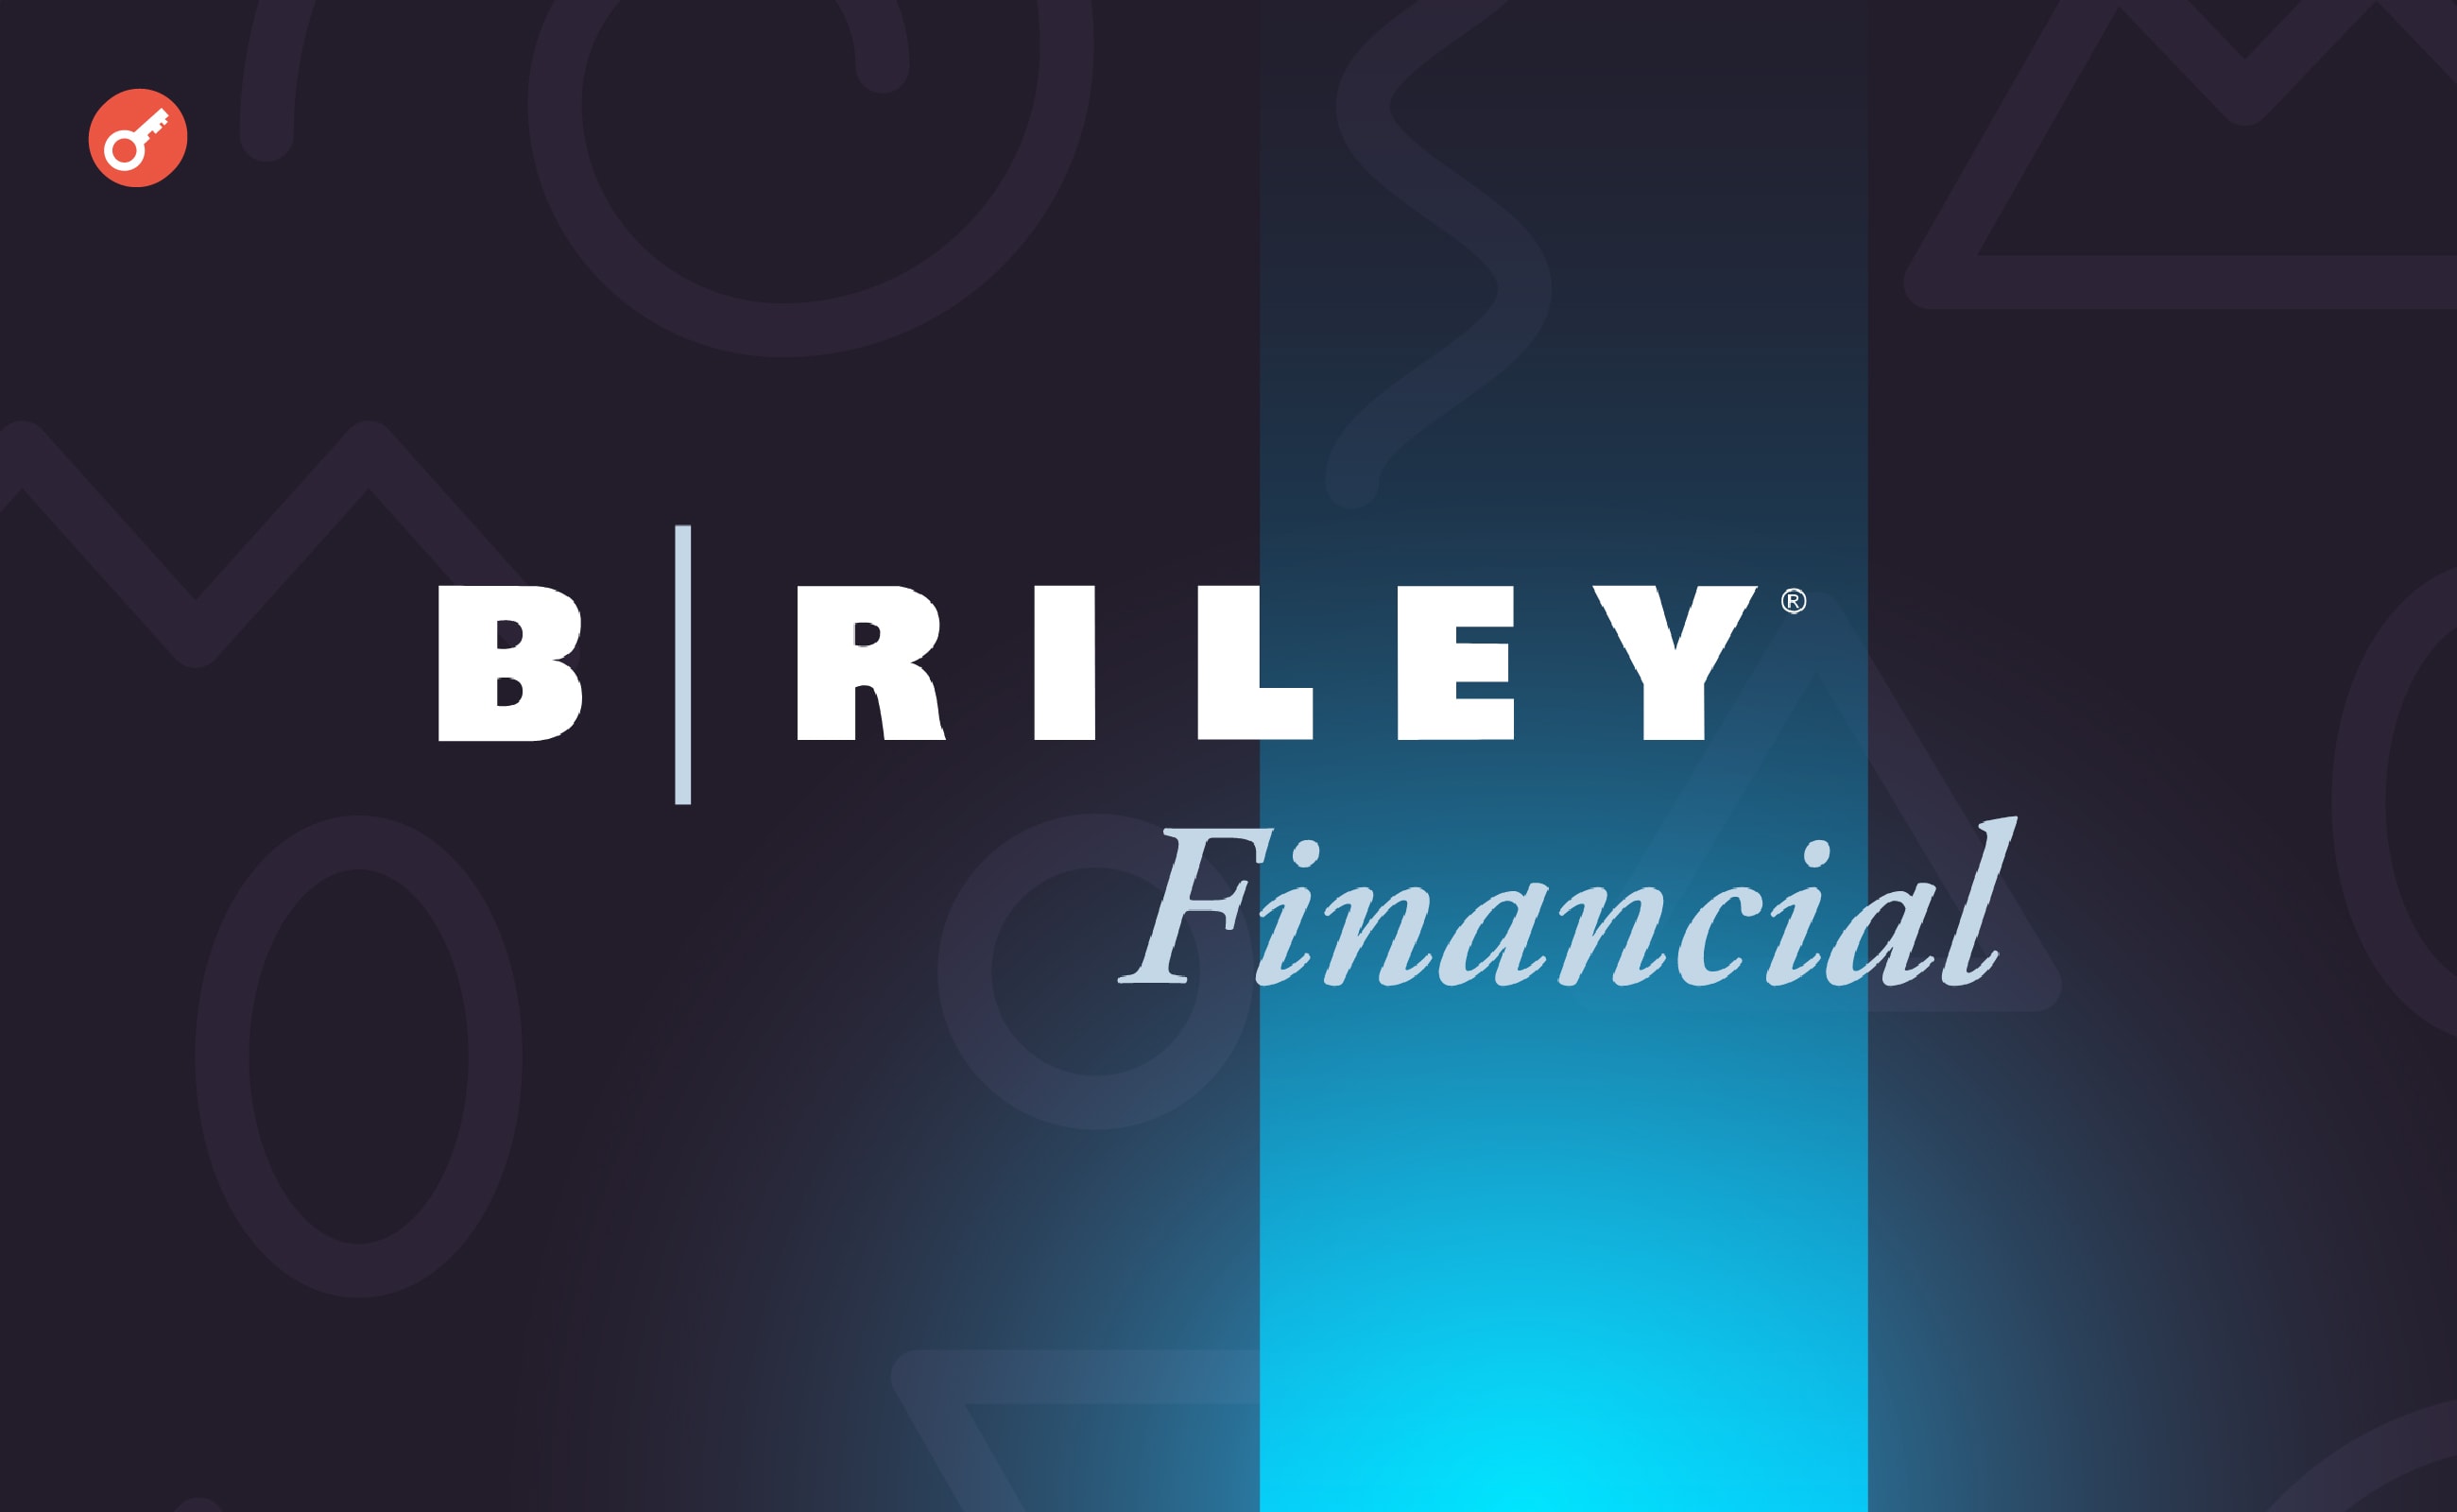 СМИ: банк B.Riley находится под следствием властей США. Заглавный коллаж новости.